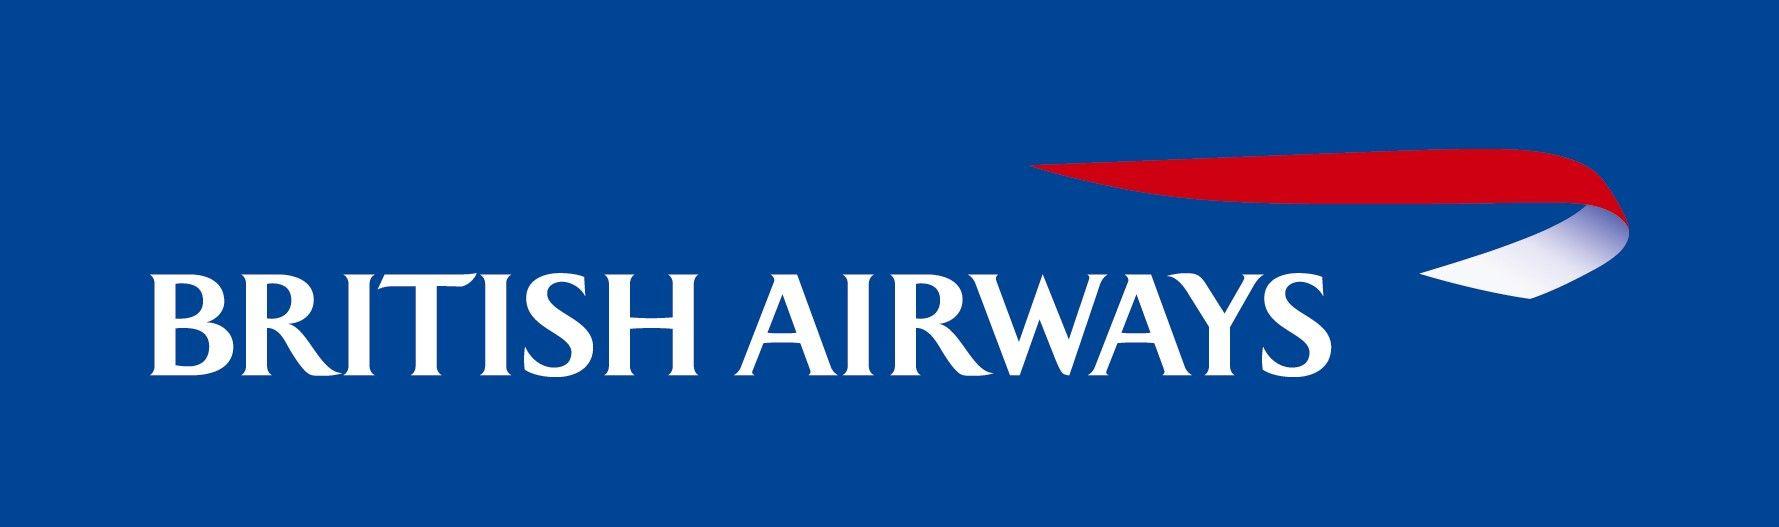 British Airline Logo - British Airways Logo #BritishAirways #Logo - #Photo #Picture